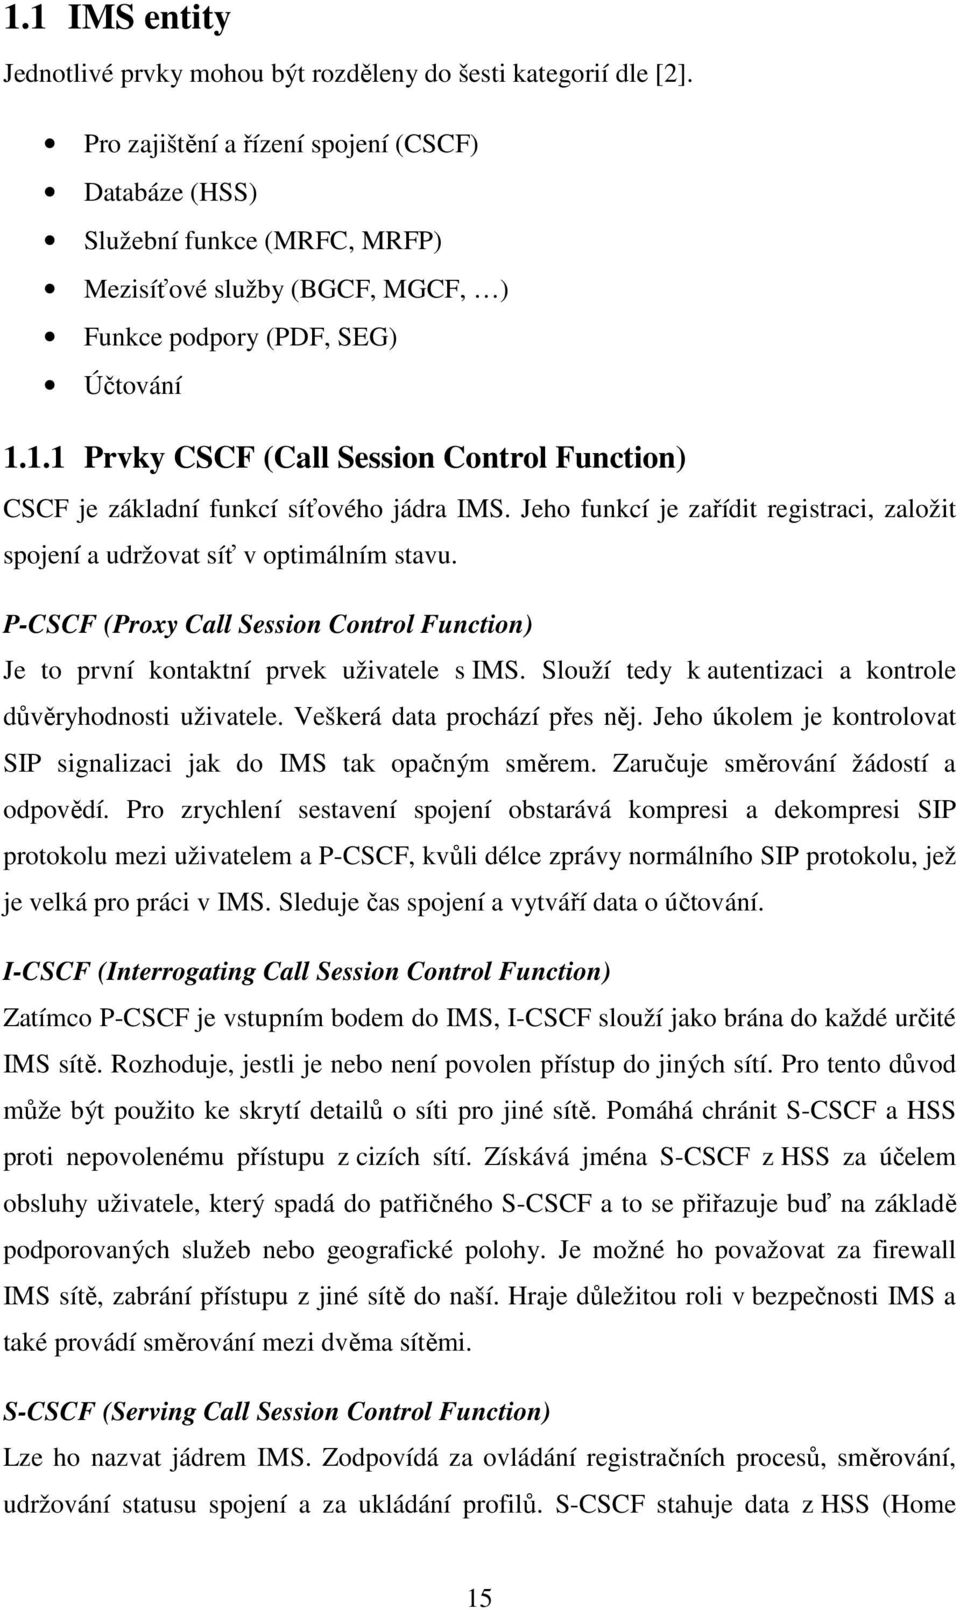 1.1 Prvky CSCF (Call Session Control Function) CSCF je základní funkcí síťového jádra IMS. Jeho funkcí je zařídit registraci, založit spojení a udržovat síť v optimálním stavu.